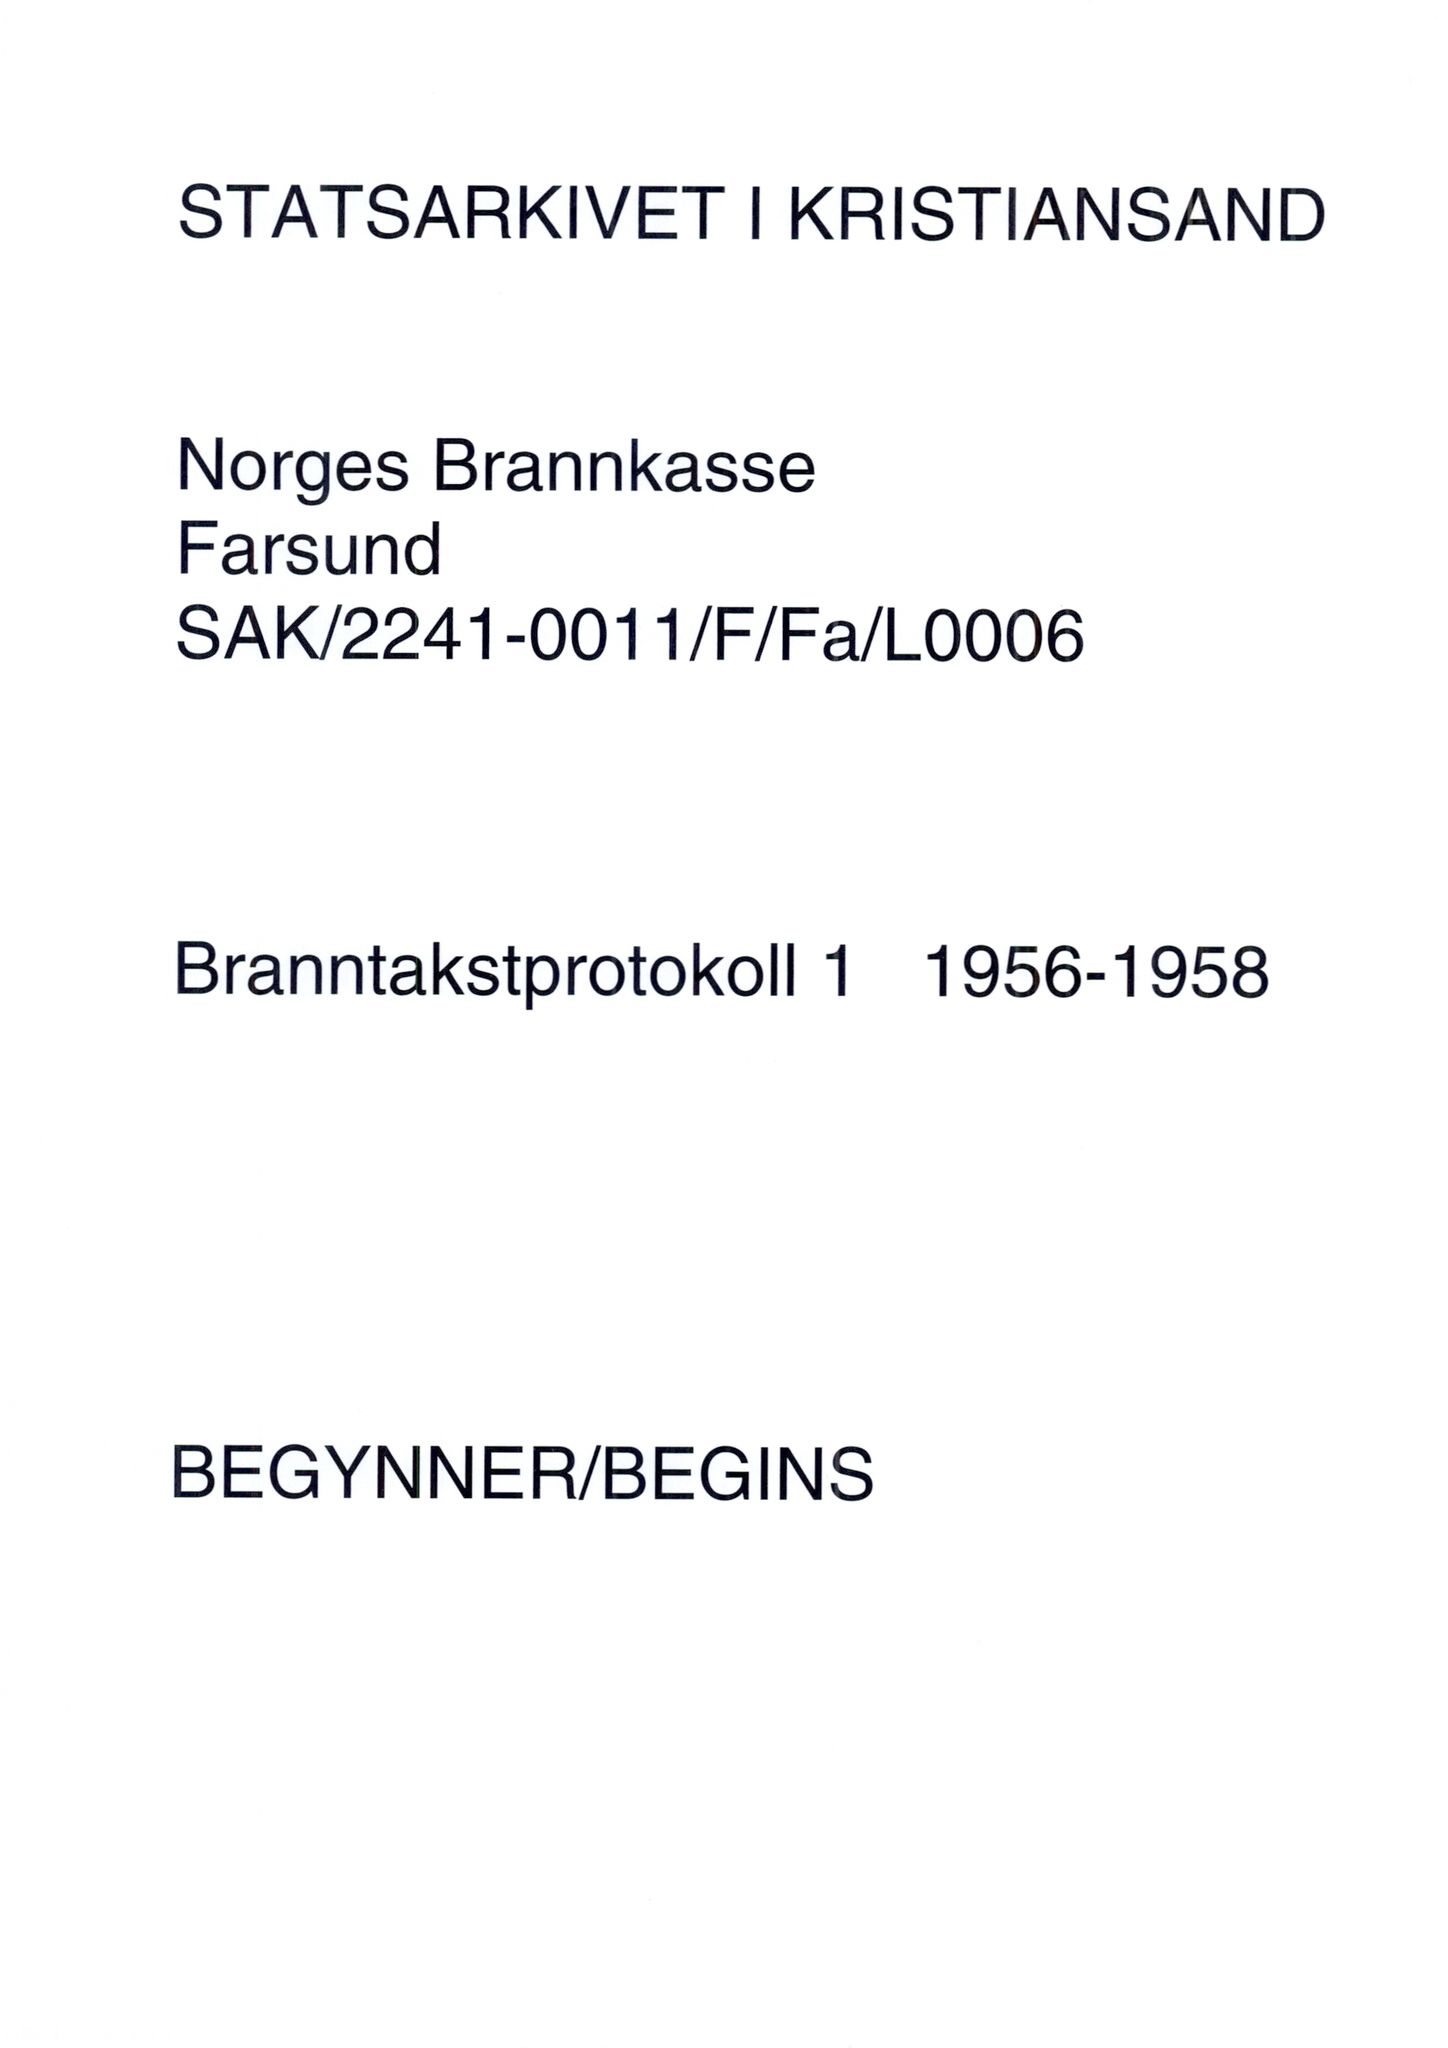 Norges Brannkasse Farsund, SAK/2241-0011/F/Fa/L0006/0001: Branntakstprotokoller nr. 7 og 8 for Farsund, Herad og Spind / Branntakstprotokoll nr. 7 for Farsund, Herad og Spind, alfabetisk etter gårdsnavn, 1956-1958